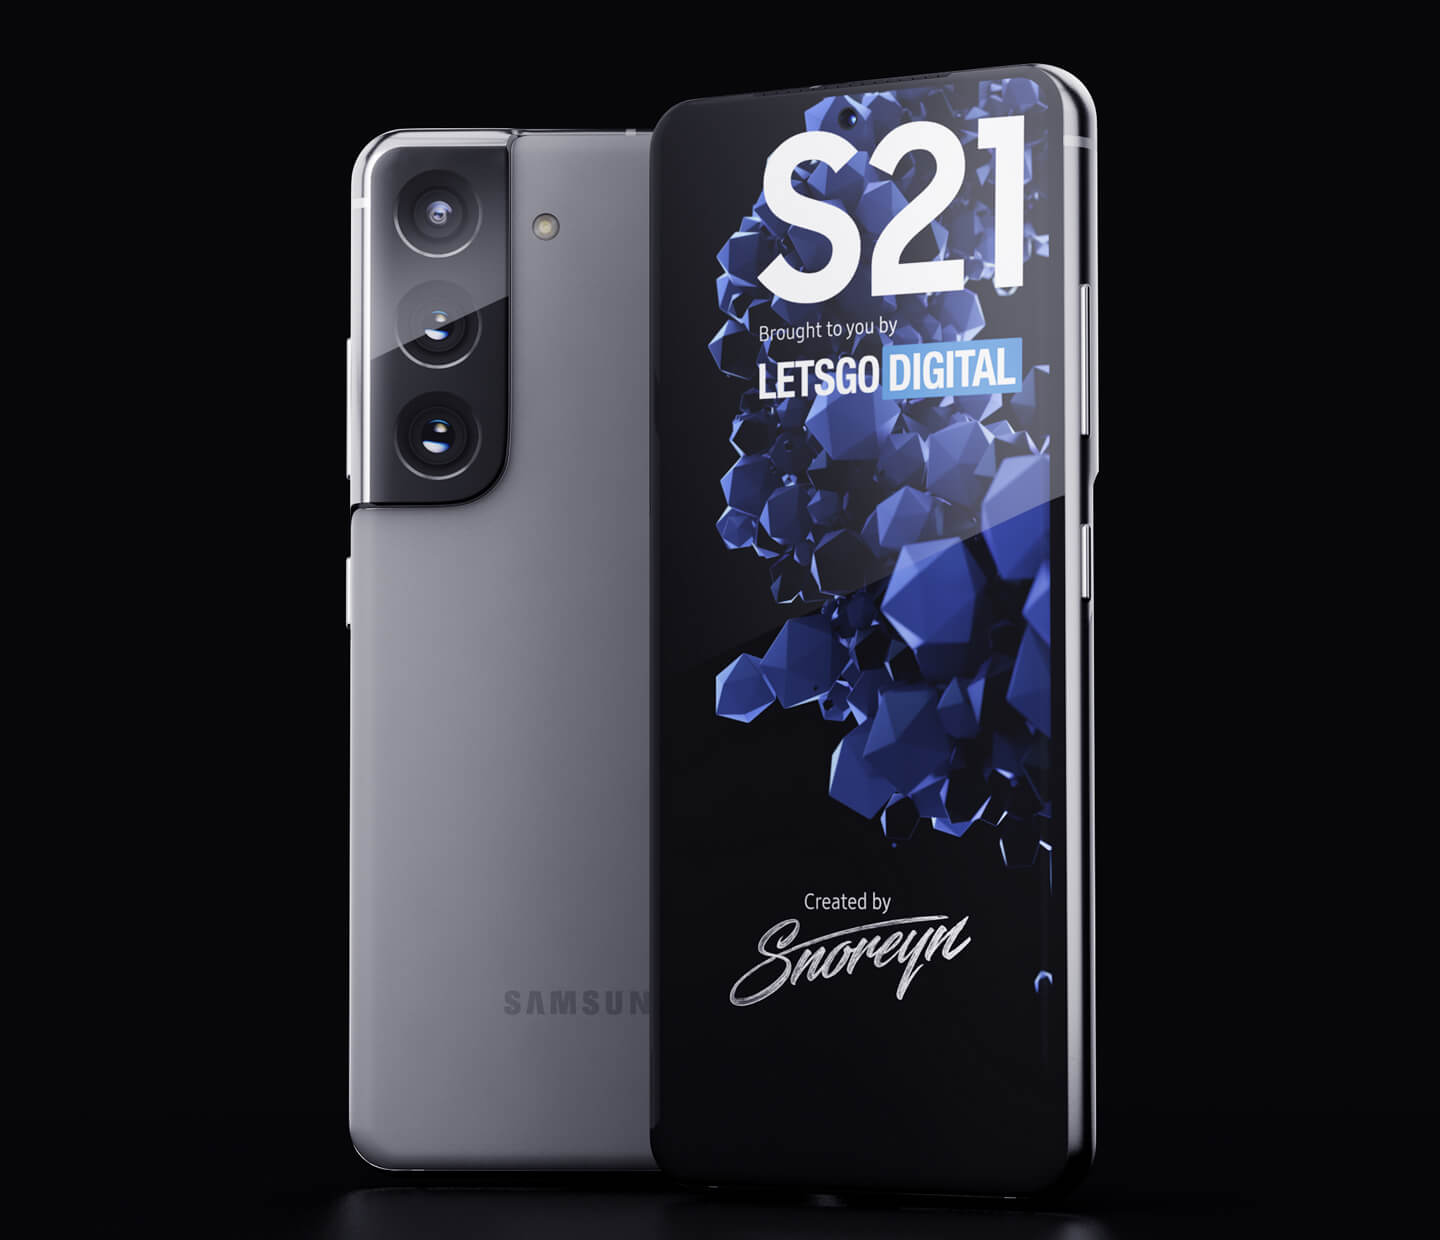 Samsung smartphone S21